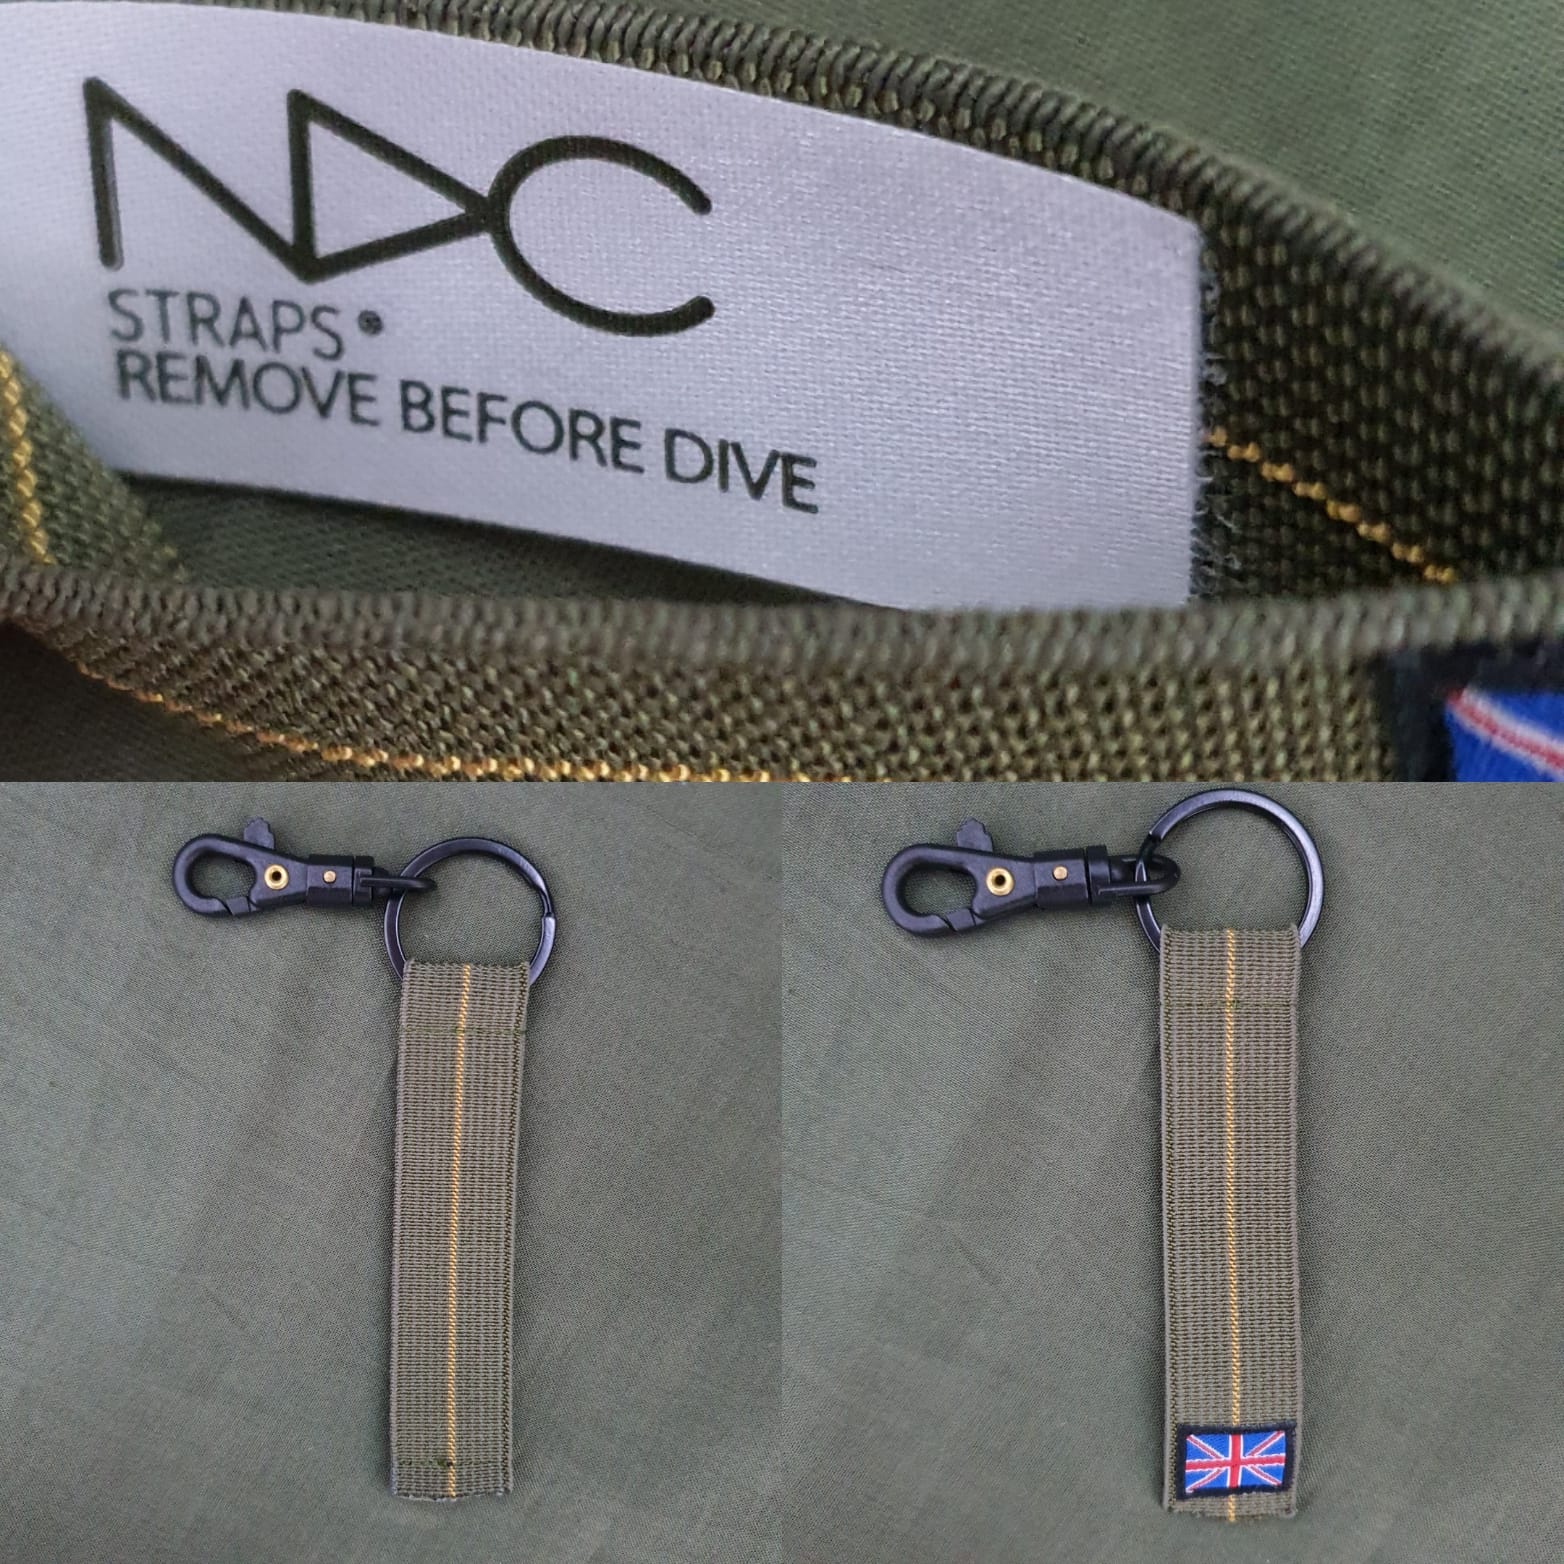 NDC key fob - NDC Straps